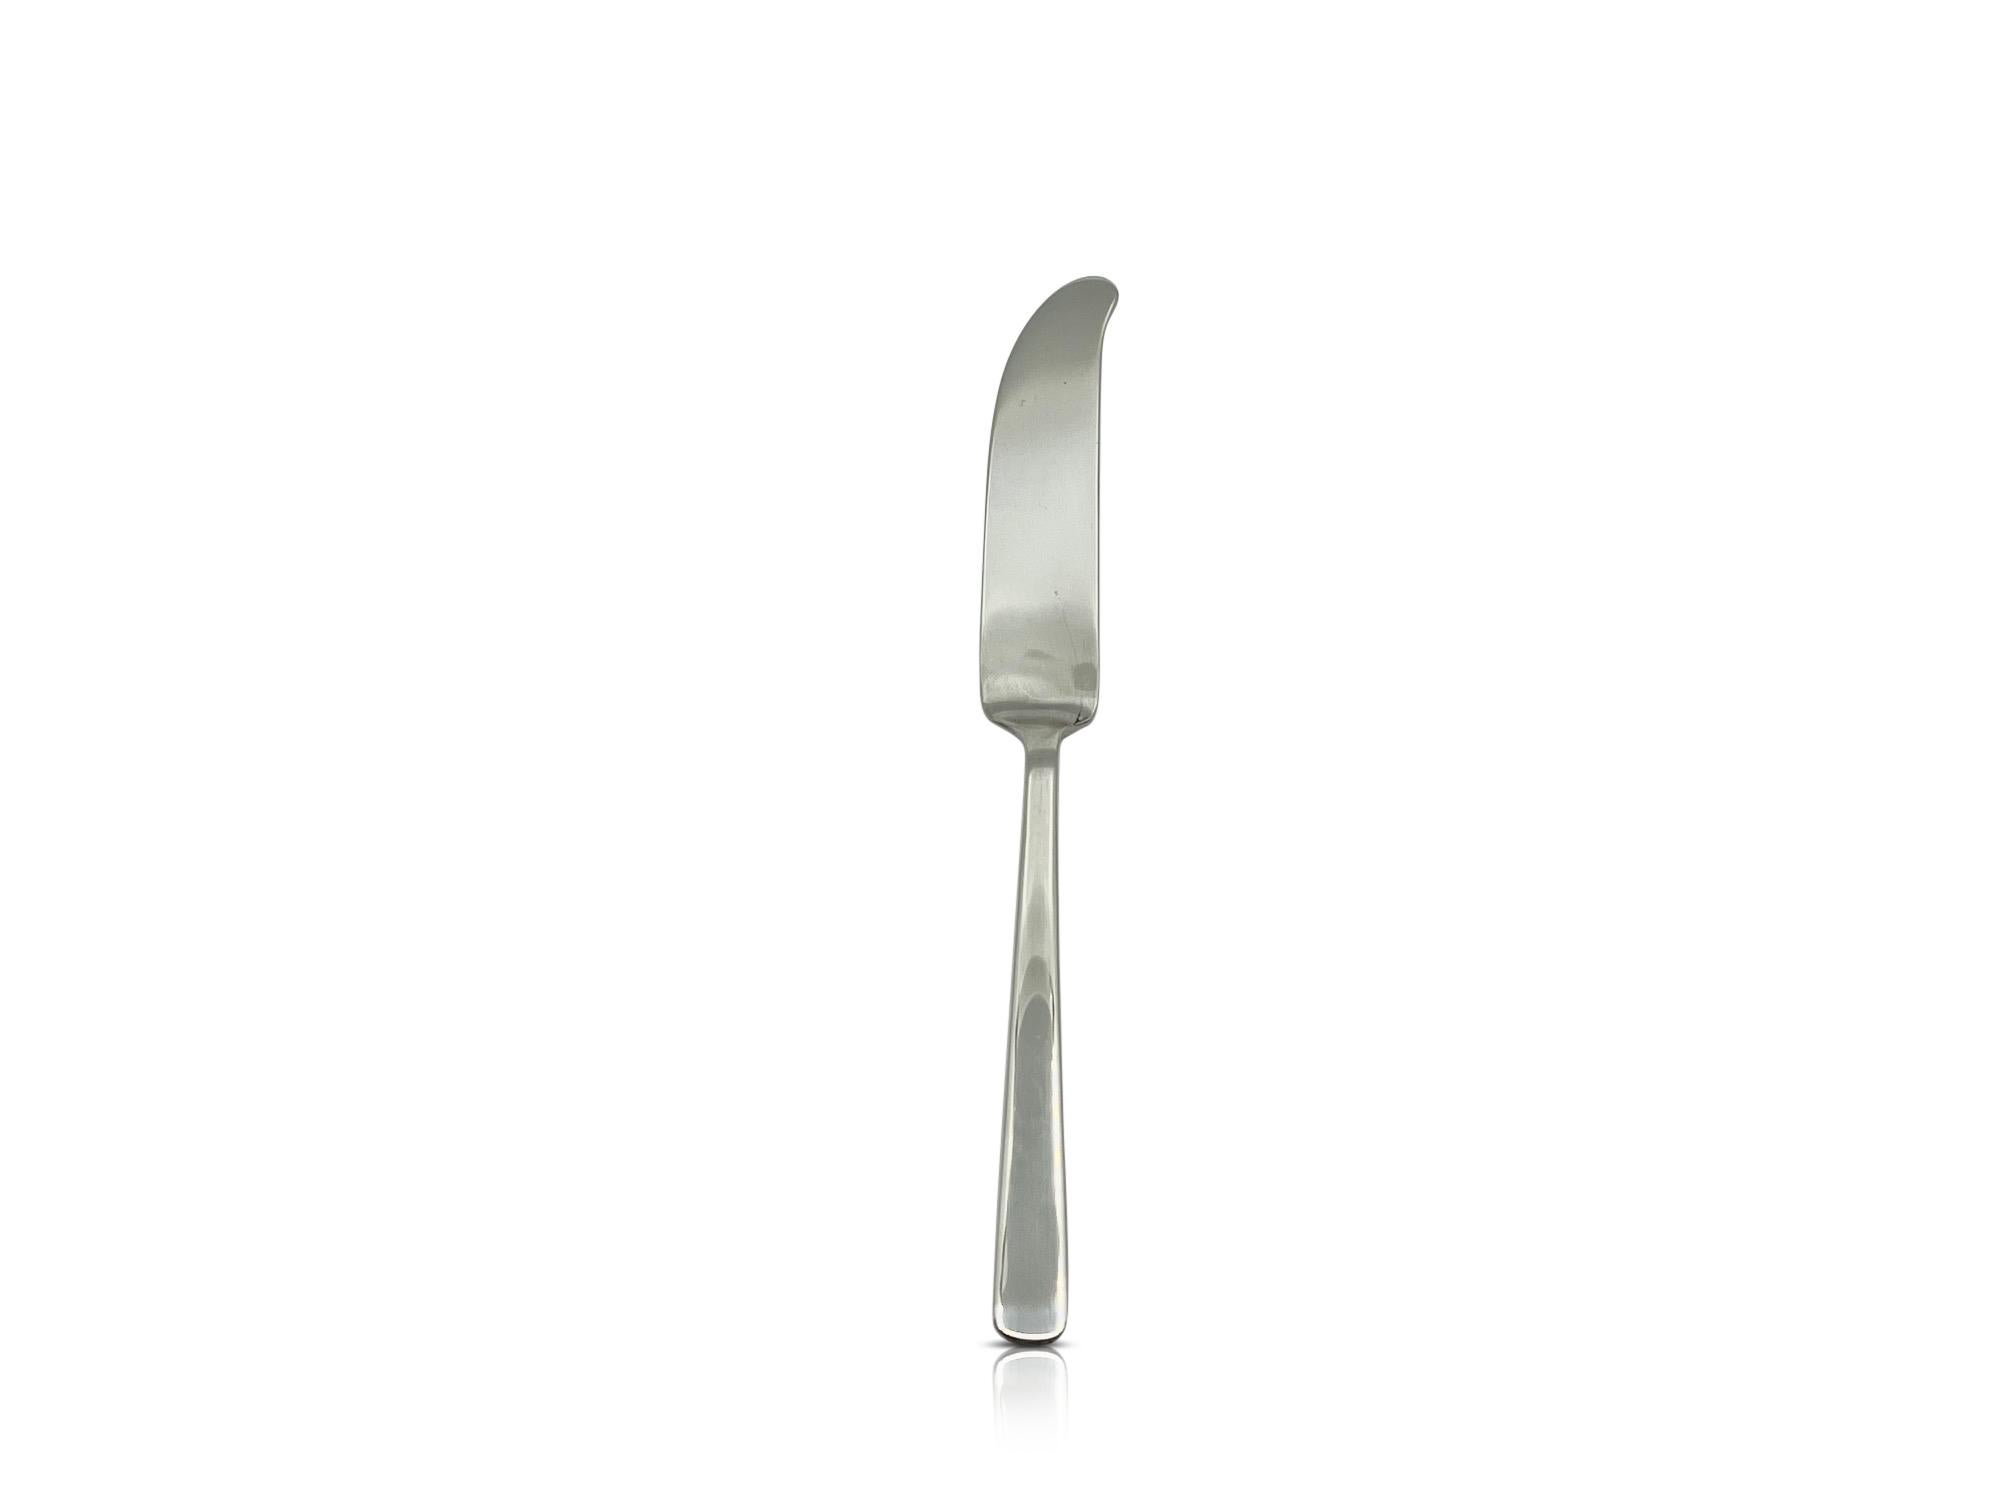 Polished Kay Bojesen Sterling Silver Grand Prix Curved Butter Knife For Sale